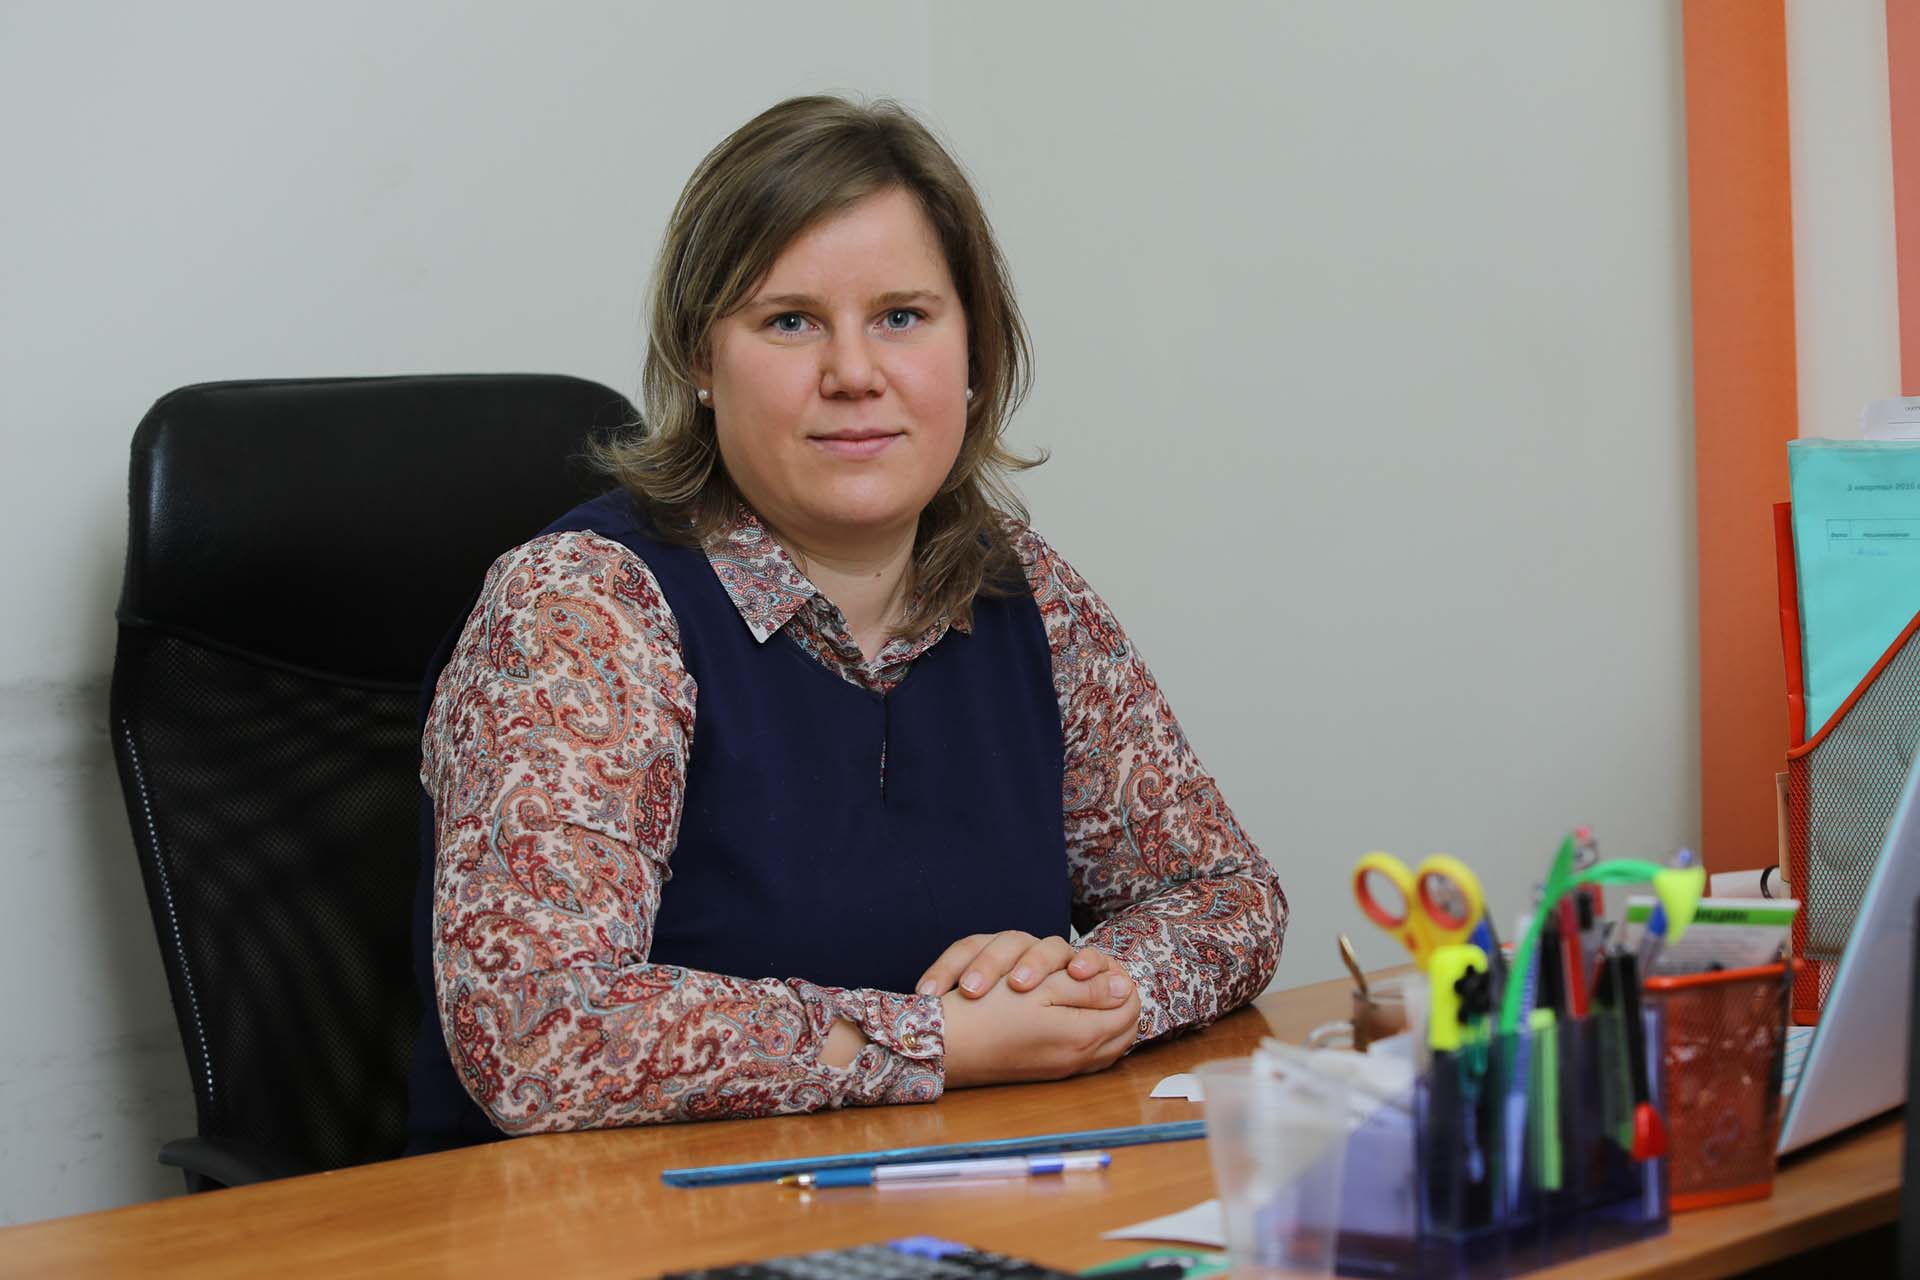 Елена Бойкова - эксперт в области бухгалтерского учета с опытом работы главным бухгалтером более 20 лет